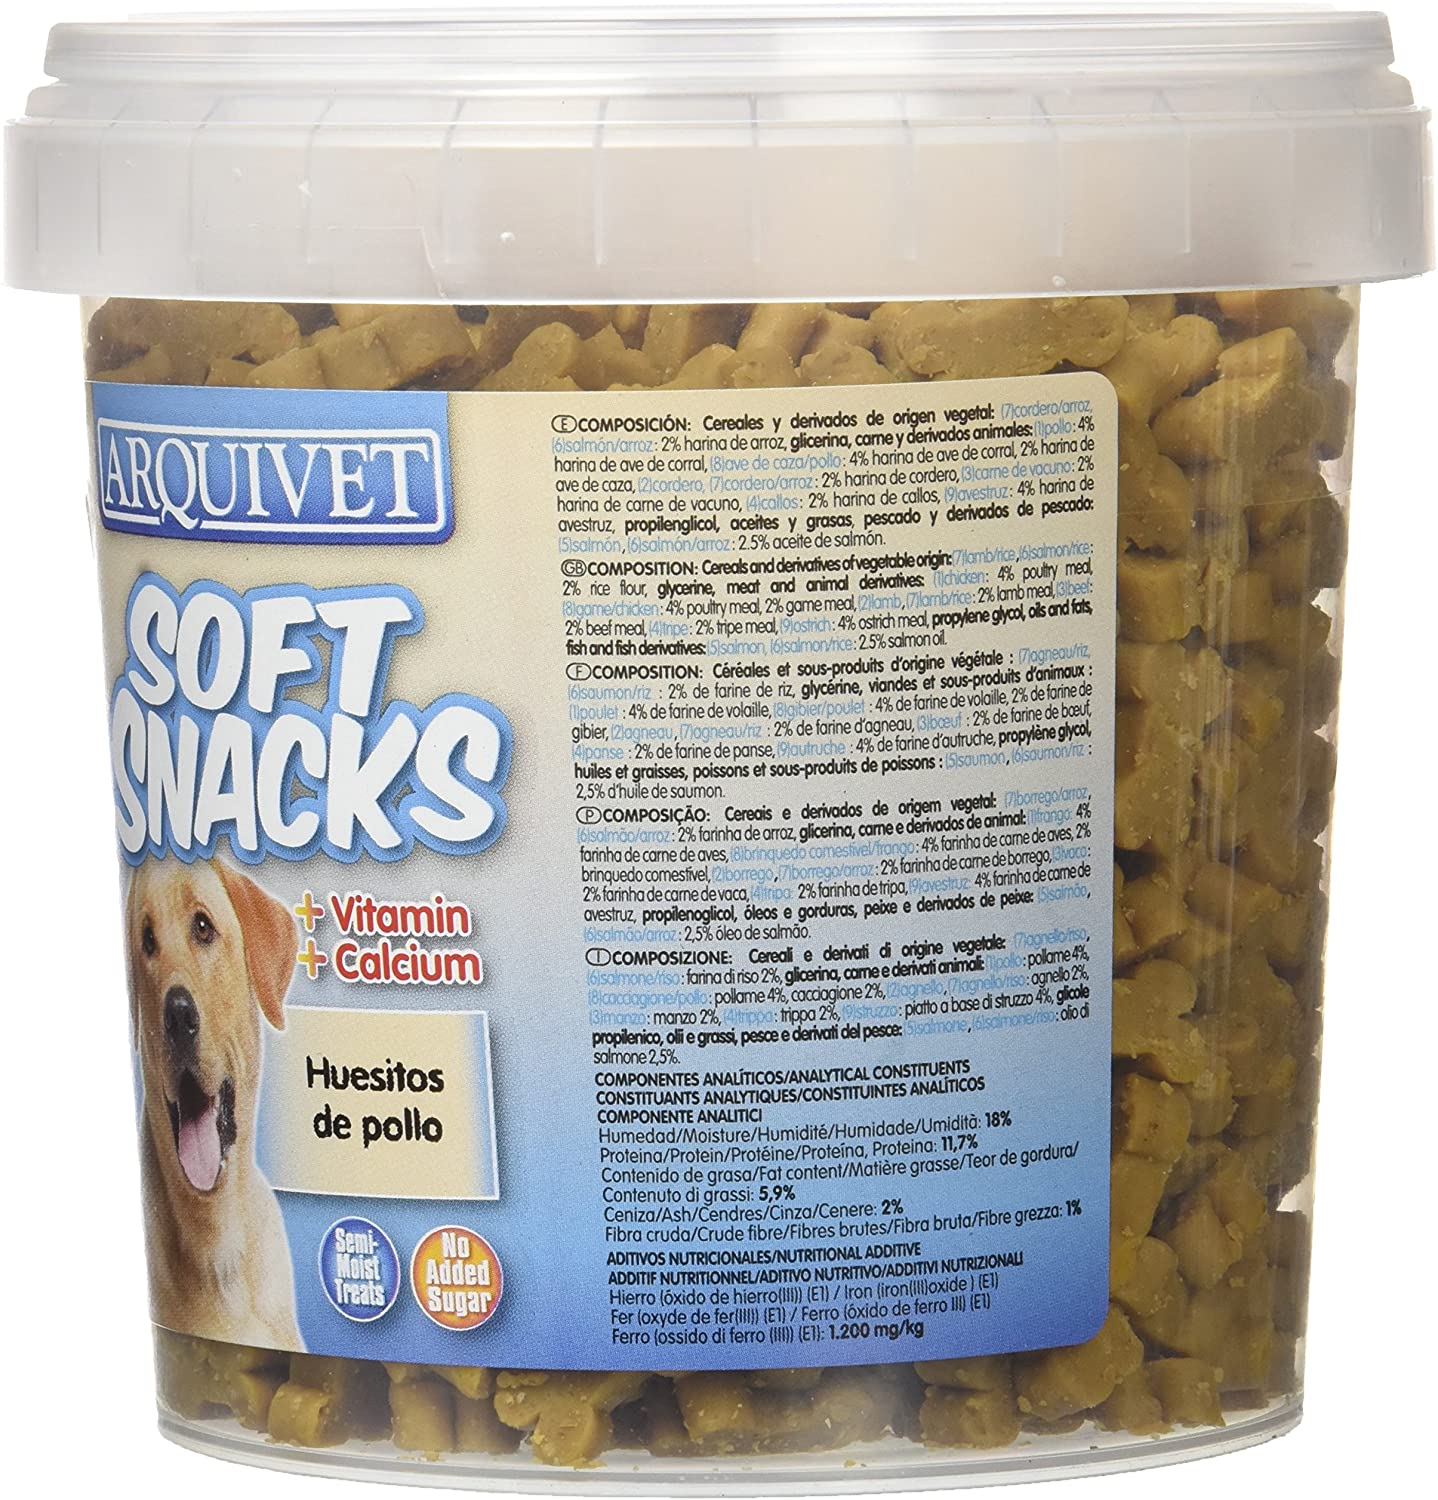  Arquivet Soft Snacks huesitos Pollo 800 grs - 855 gr 